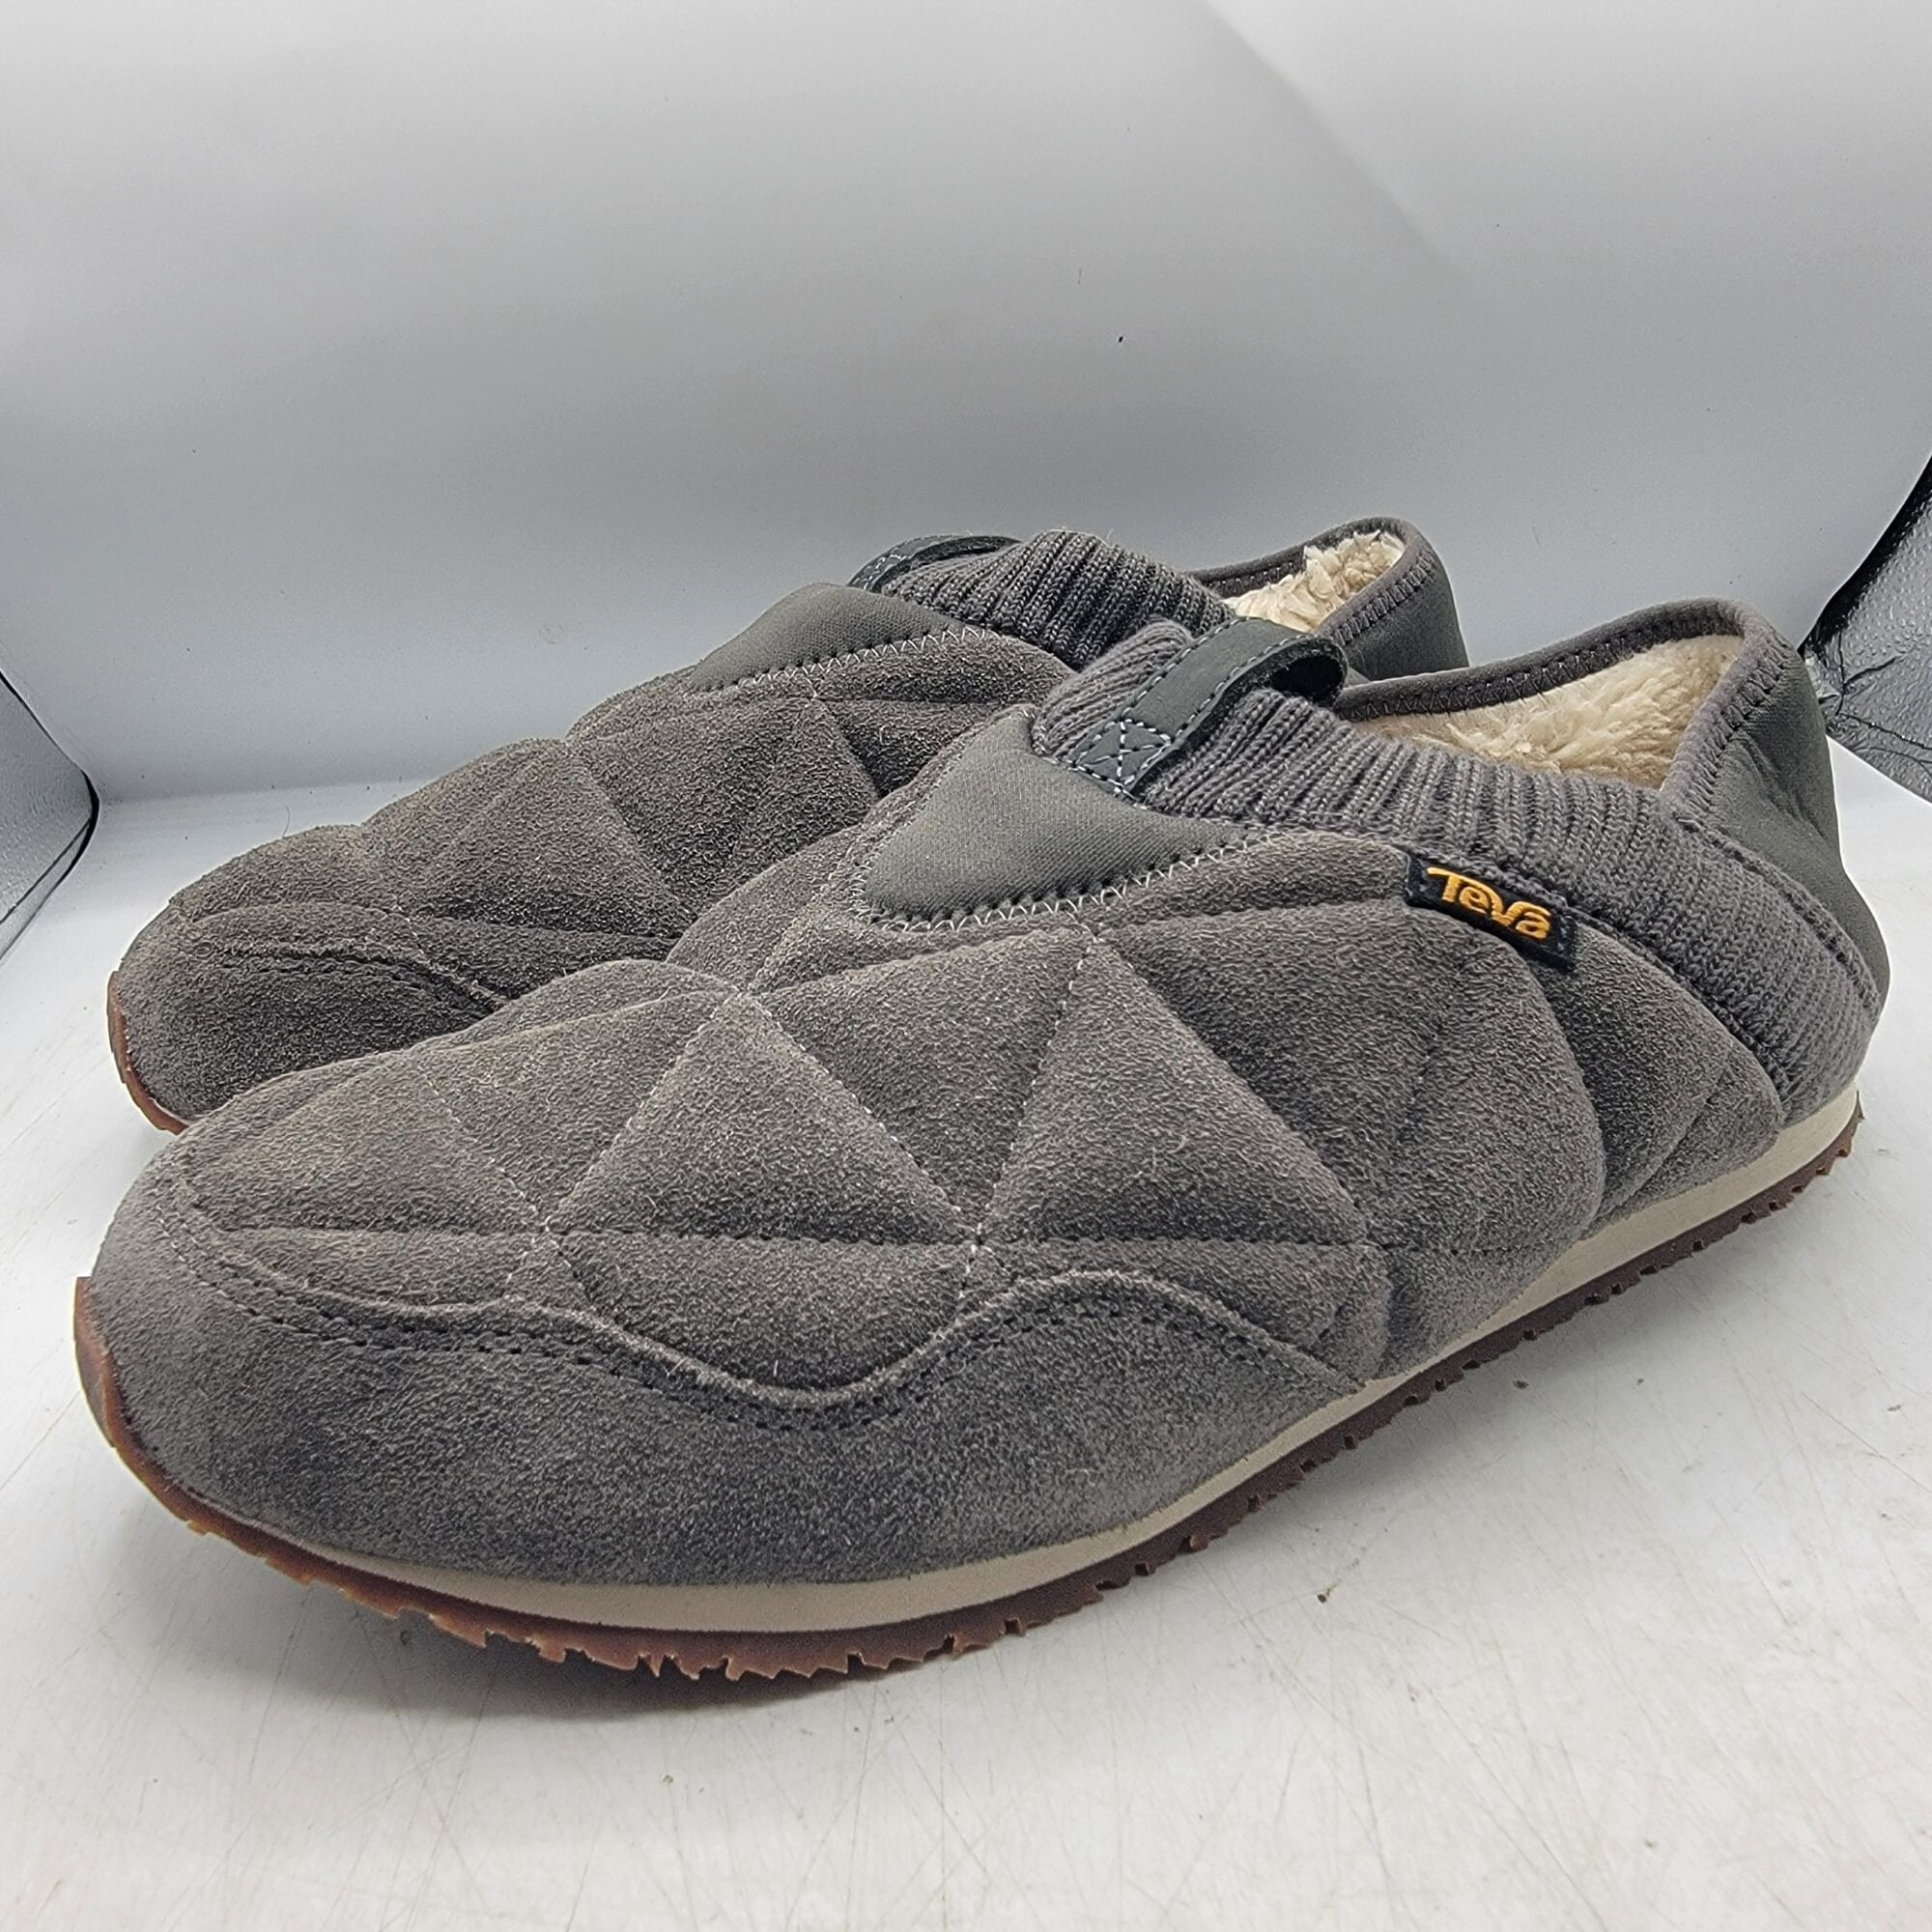 Teva Teva ReEmber Plushed Mens 11 Gray Slipper Shoes Comfort Line Size US 11 / EU 44 - 4 Thumbnail